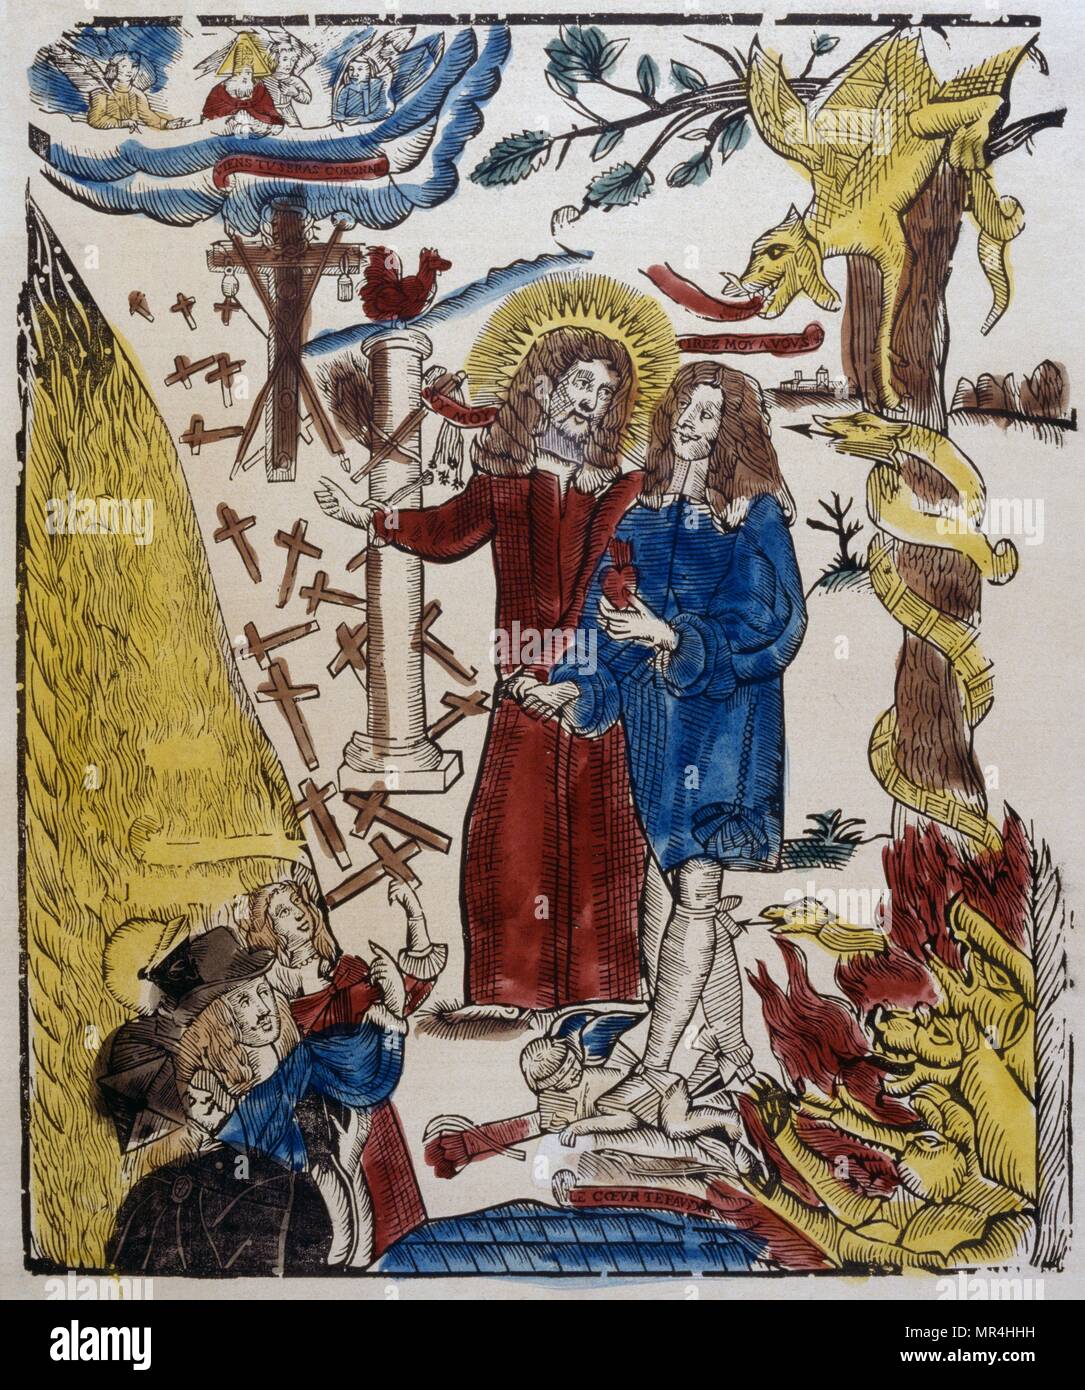 Farbige Holzschnitt Abbildung: Figuren, die Laster und Tugend. Teufel sind zu sehen, die versuchen, Sünde zu verführen. Französisch um 1830 Stockfoto